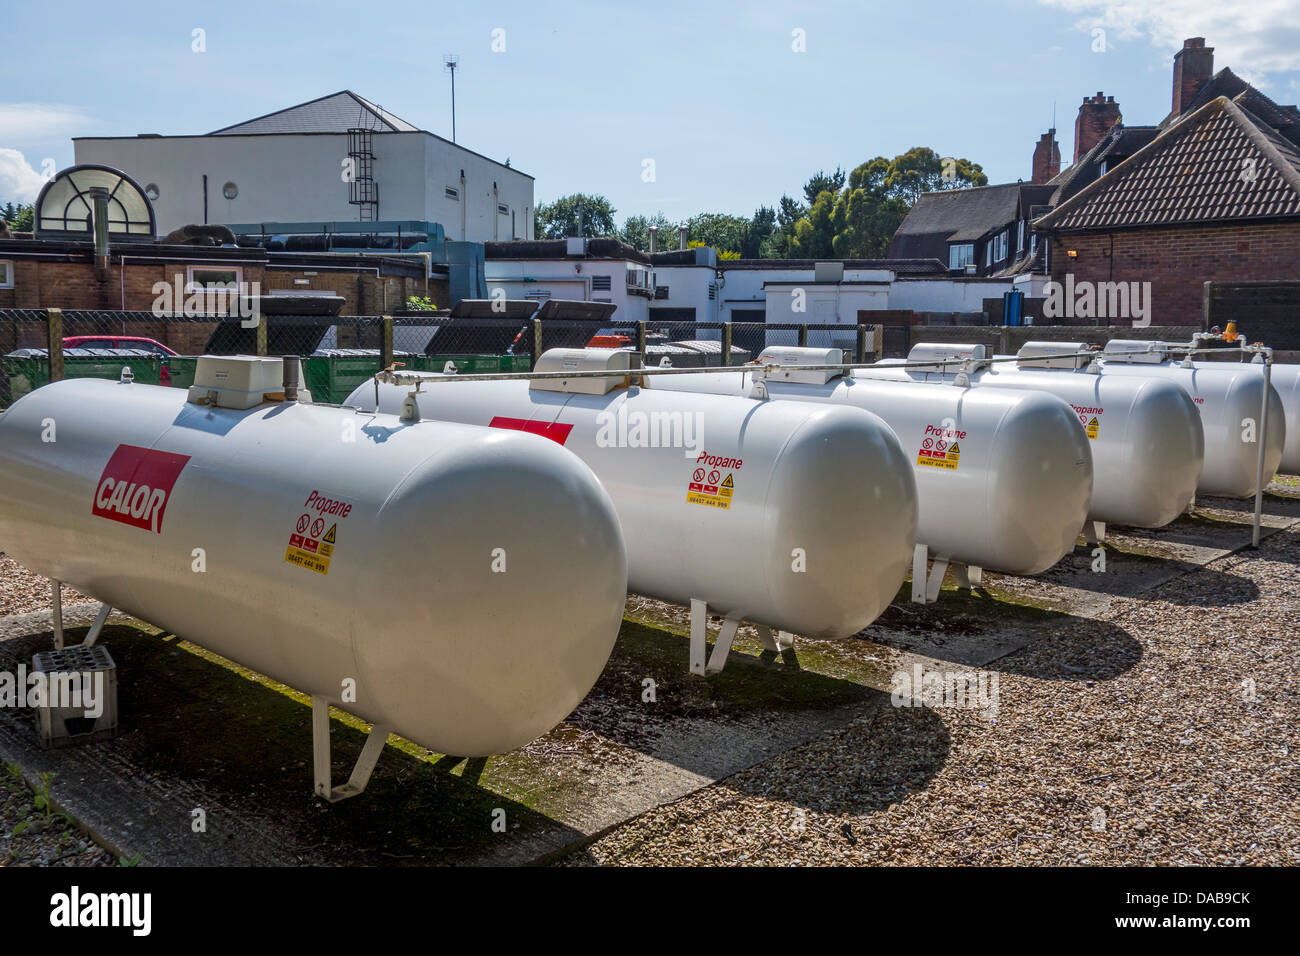 Calor Gas Tank Farm l'installation des réservoirs de propane Banque D'Images